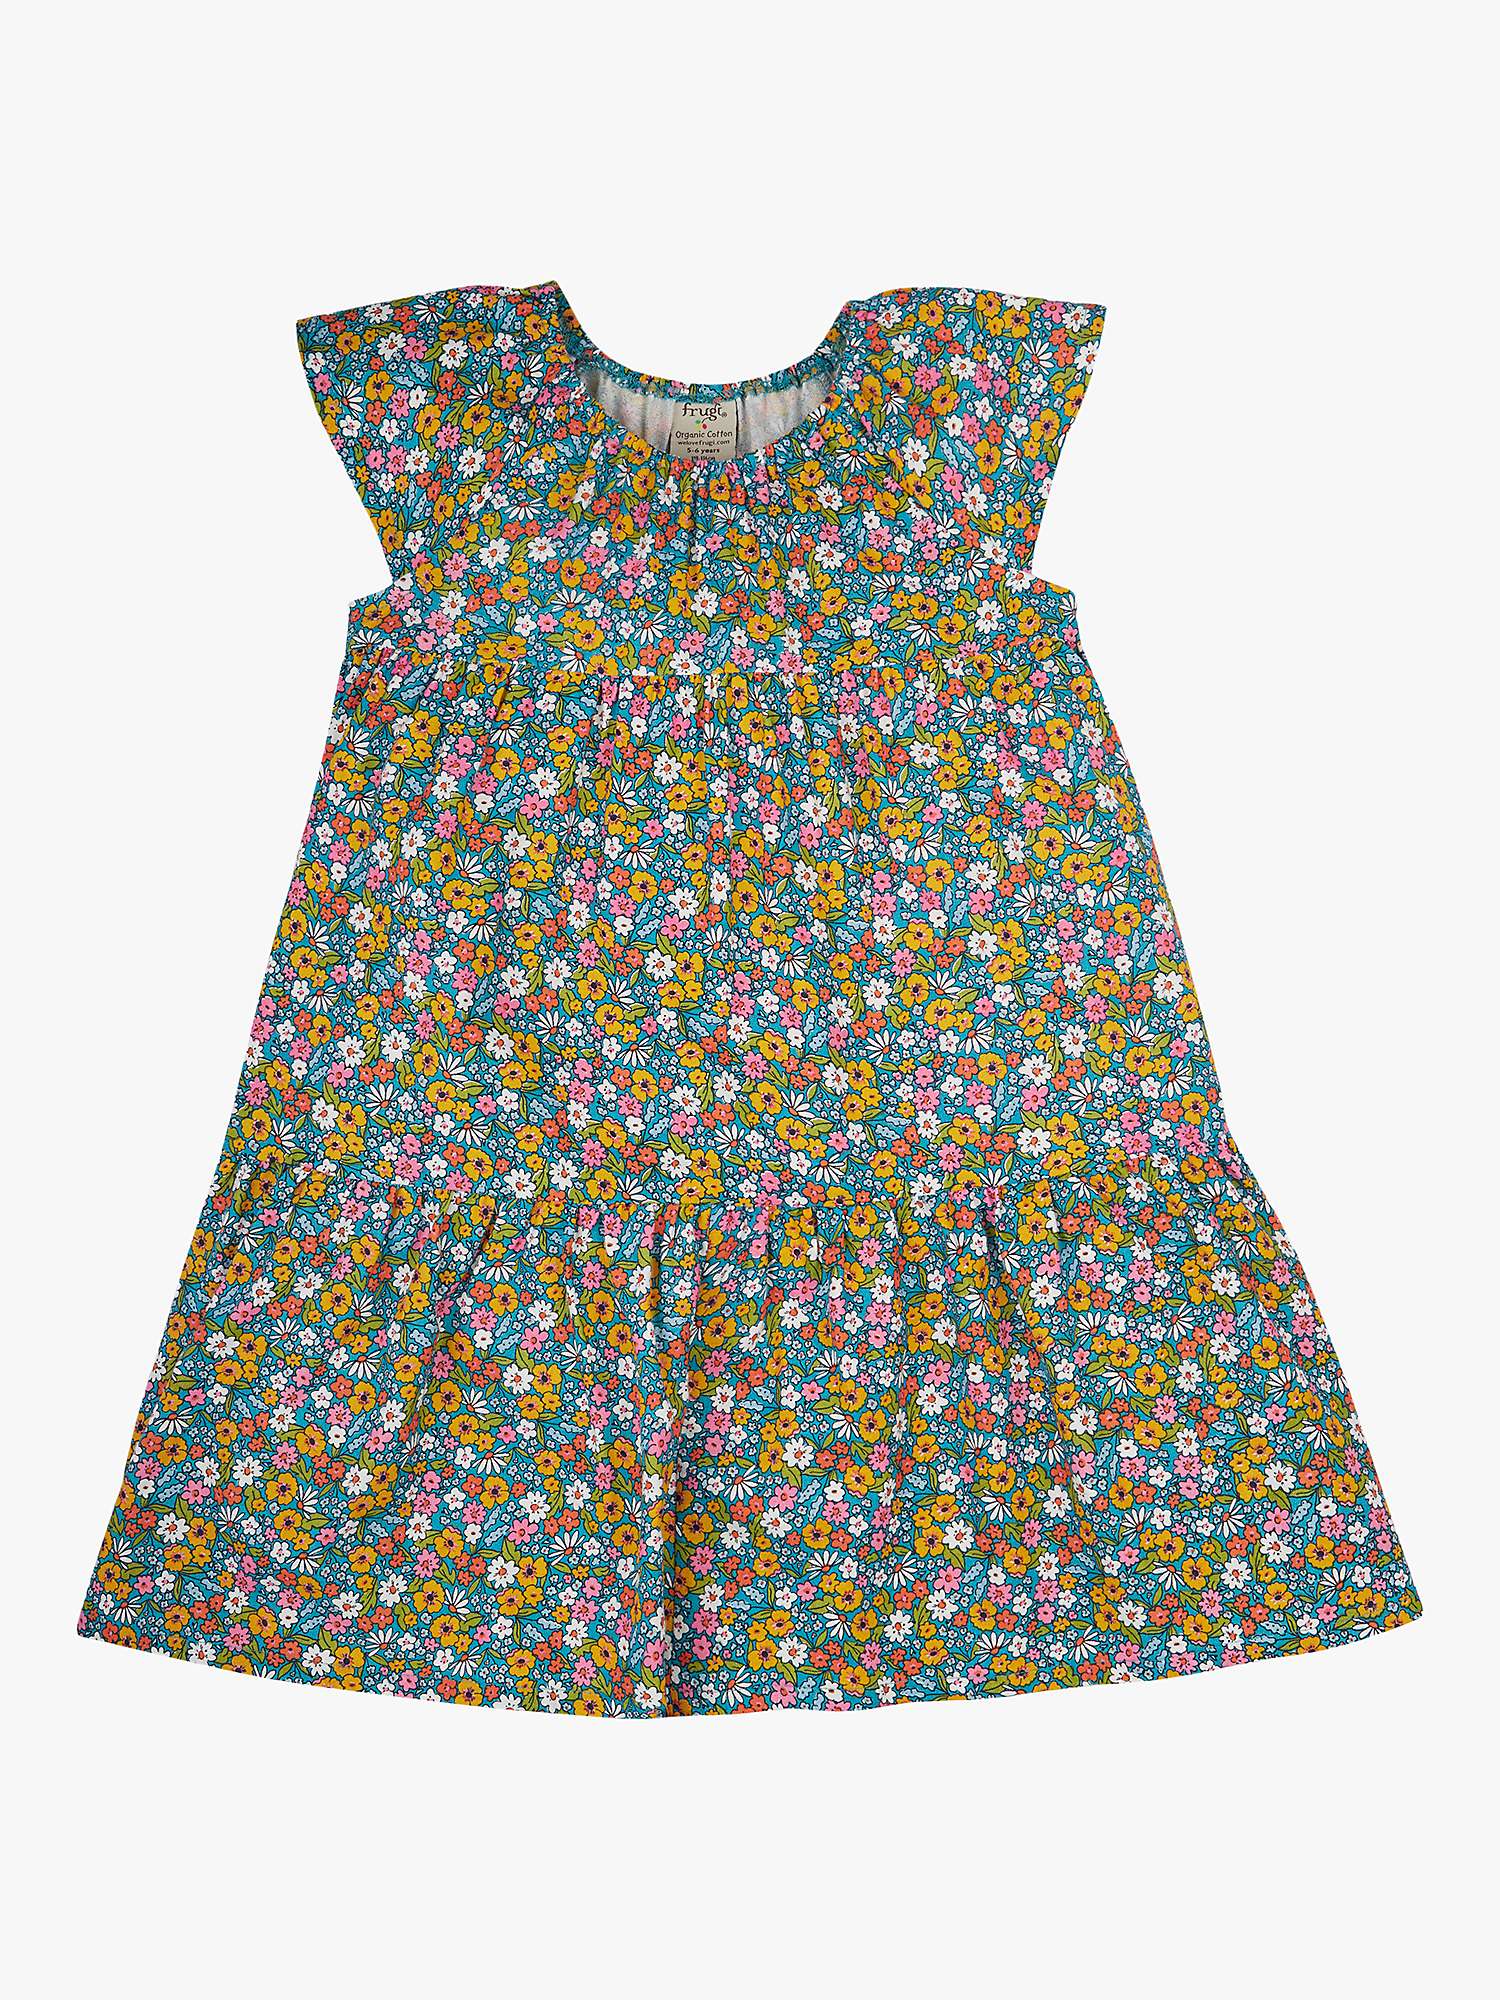 Buy Frugi Kids' Violet Floral Print Dress, Multi Online at johnlewis.com